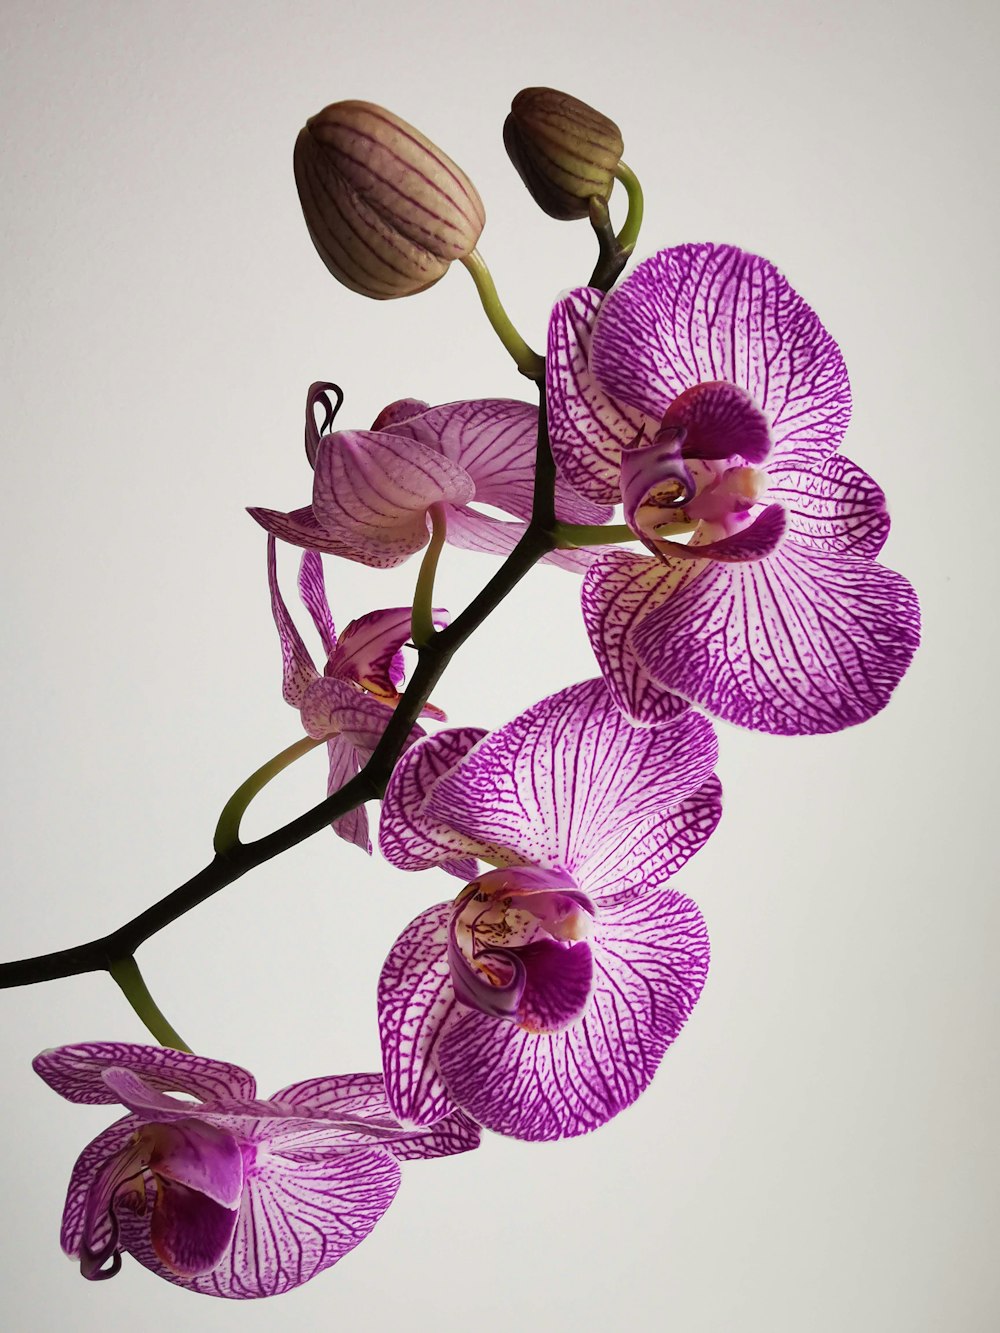 orquídeas de mariposa roxa na fotografia de perto